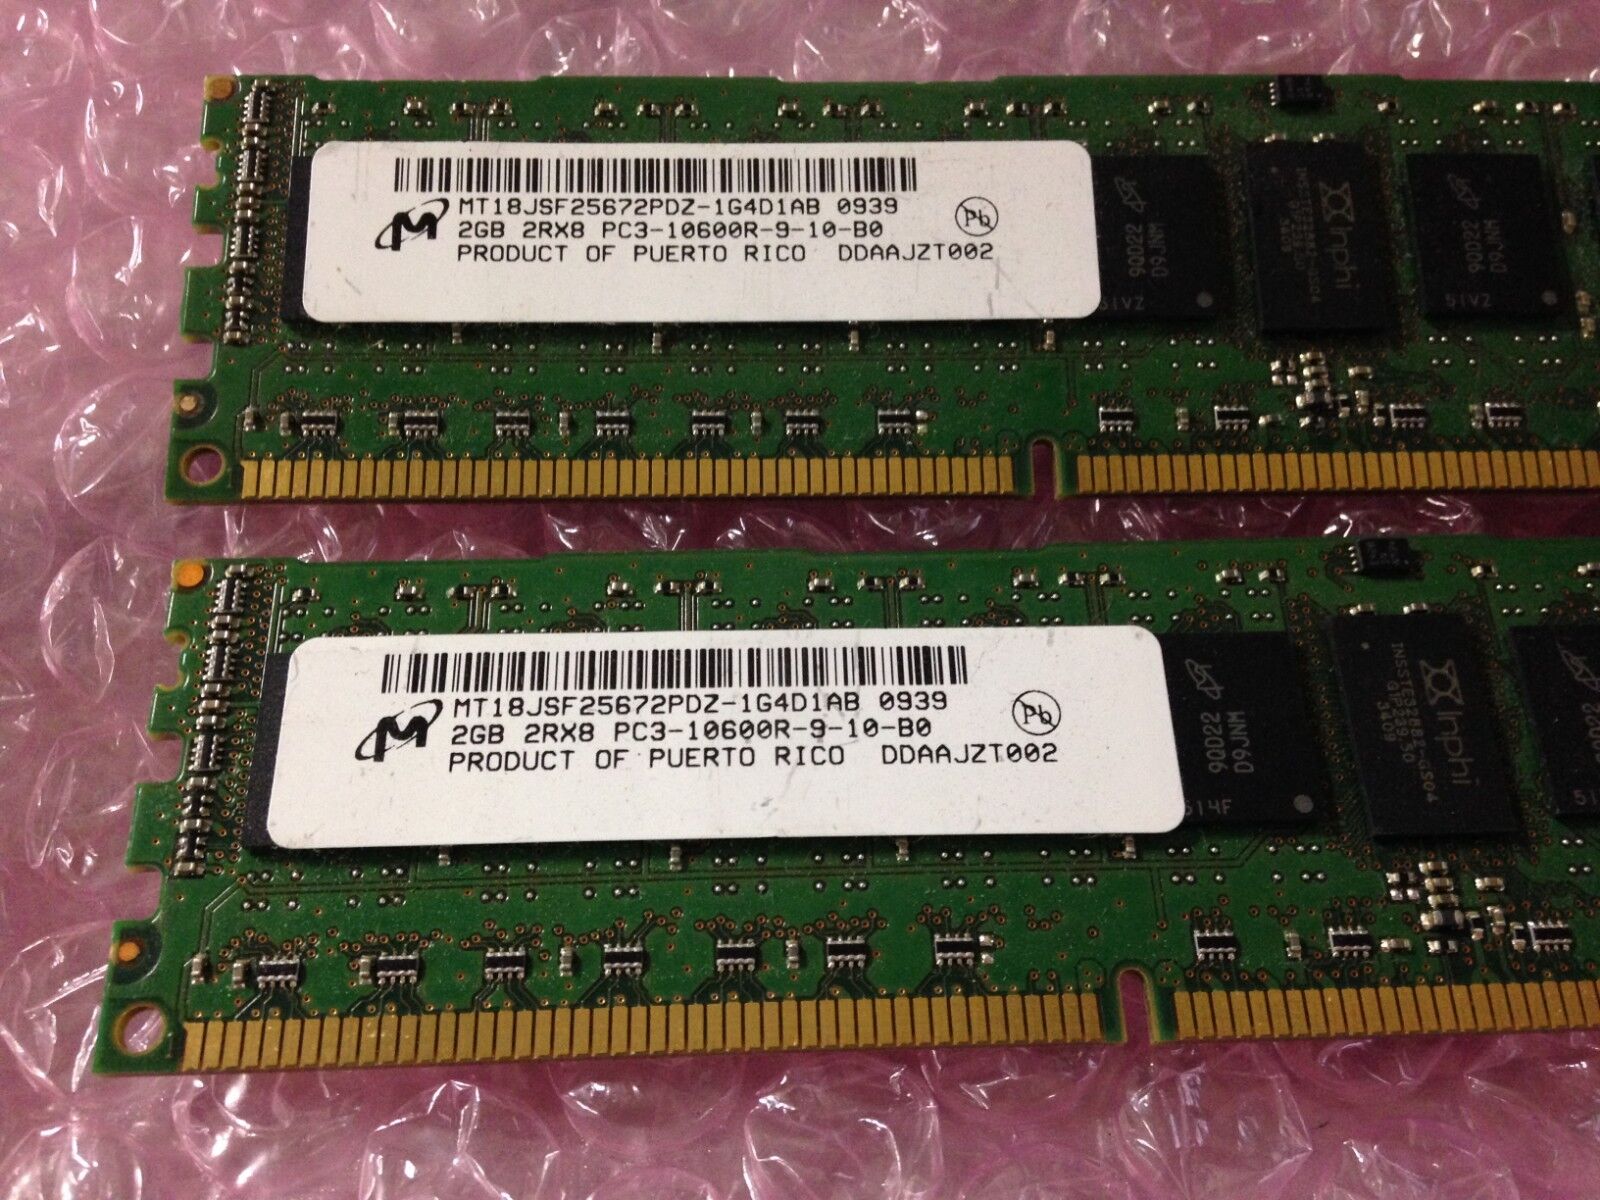 Micron 4GB (2x2GB) PC3-10600R DDR3 Server RAM MT18JSF25672PDZ-1G4D1AB